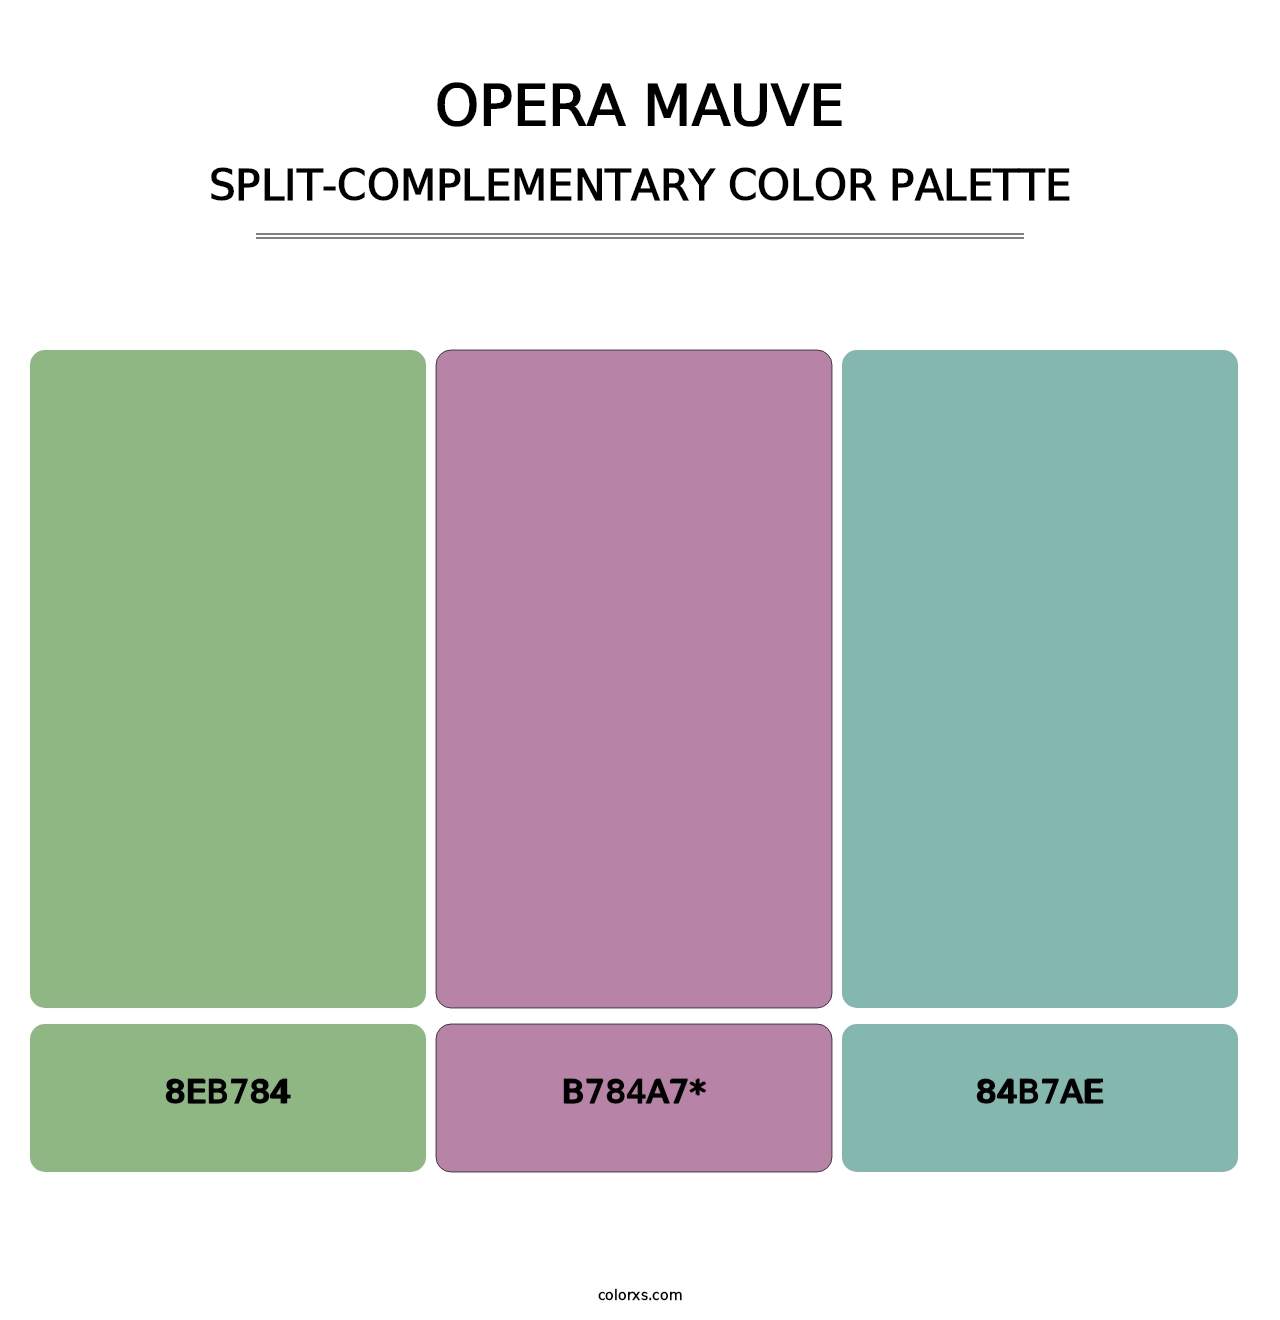 Opera Mauve - Split-Complementary Color Palette